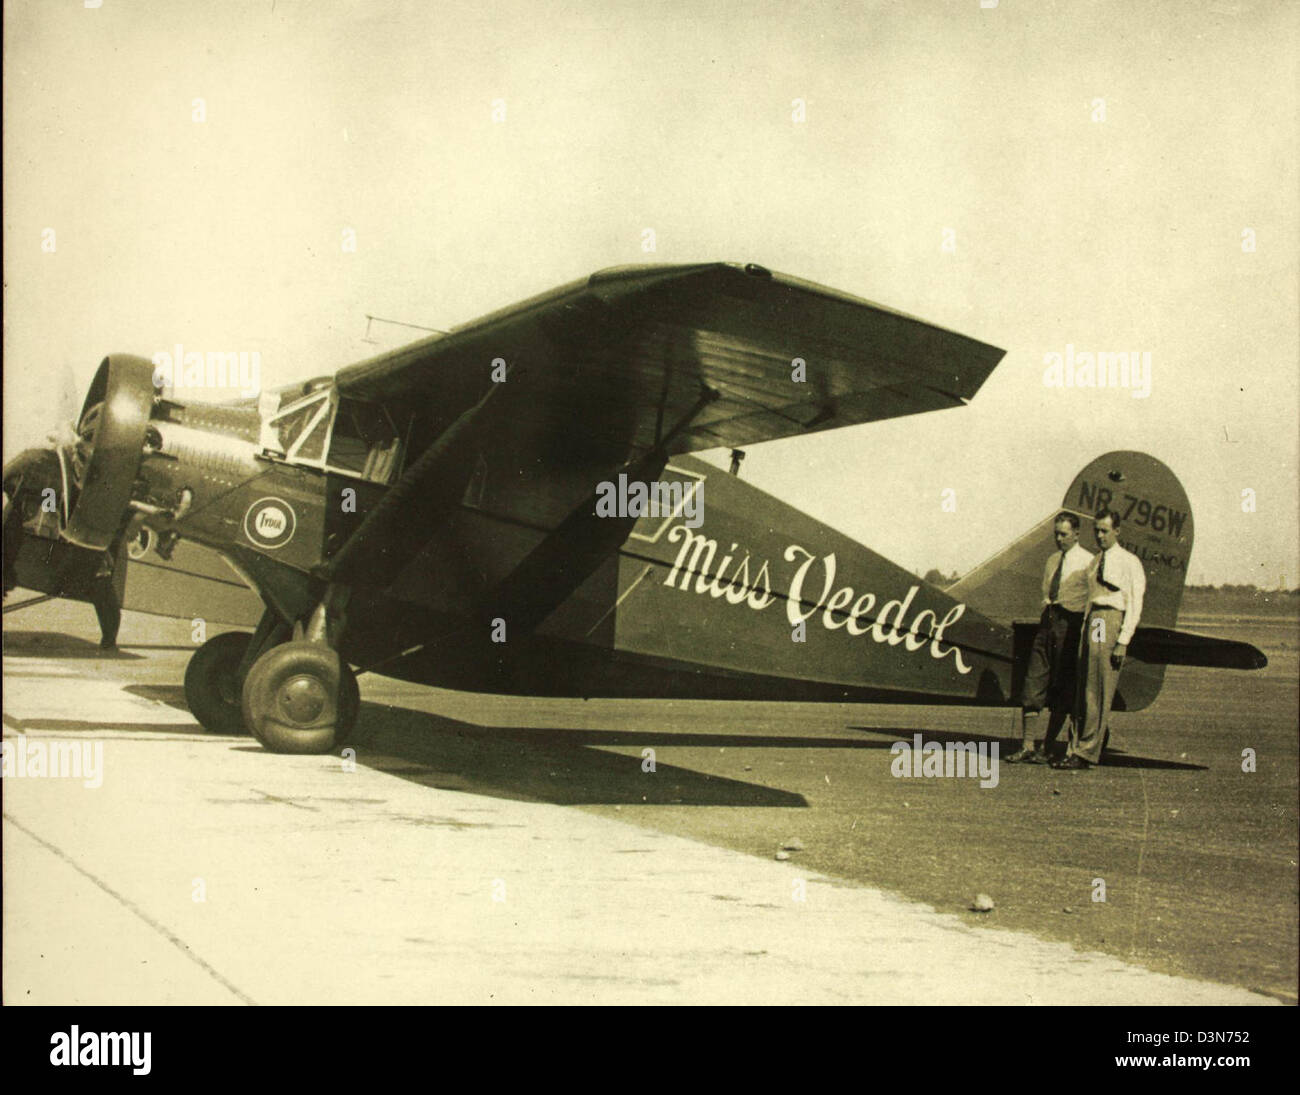 Самолет через тихий океан. Bellanca Ch-400 Skyrocket. Самолет 1931 года. 1952 - Первый безостановочный перелет через тихий океан на самолете.. Самолет Беланка декейшин.